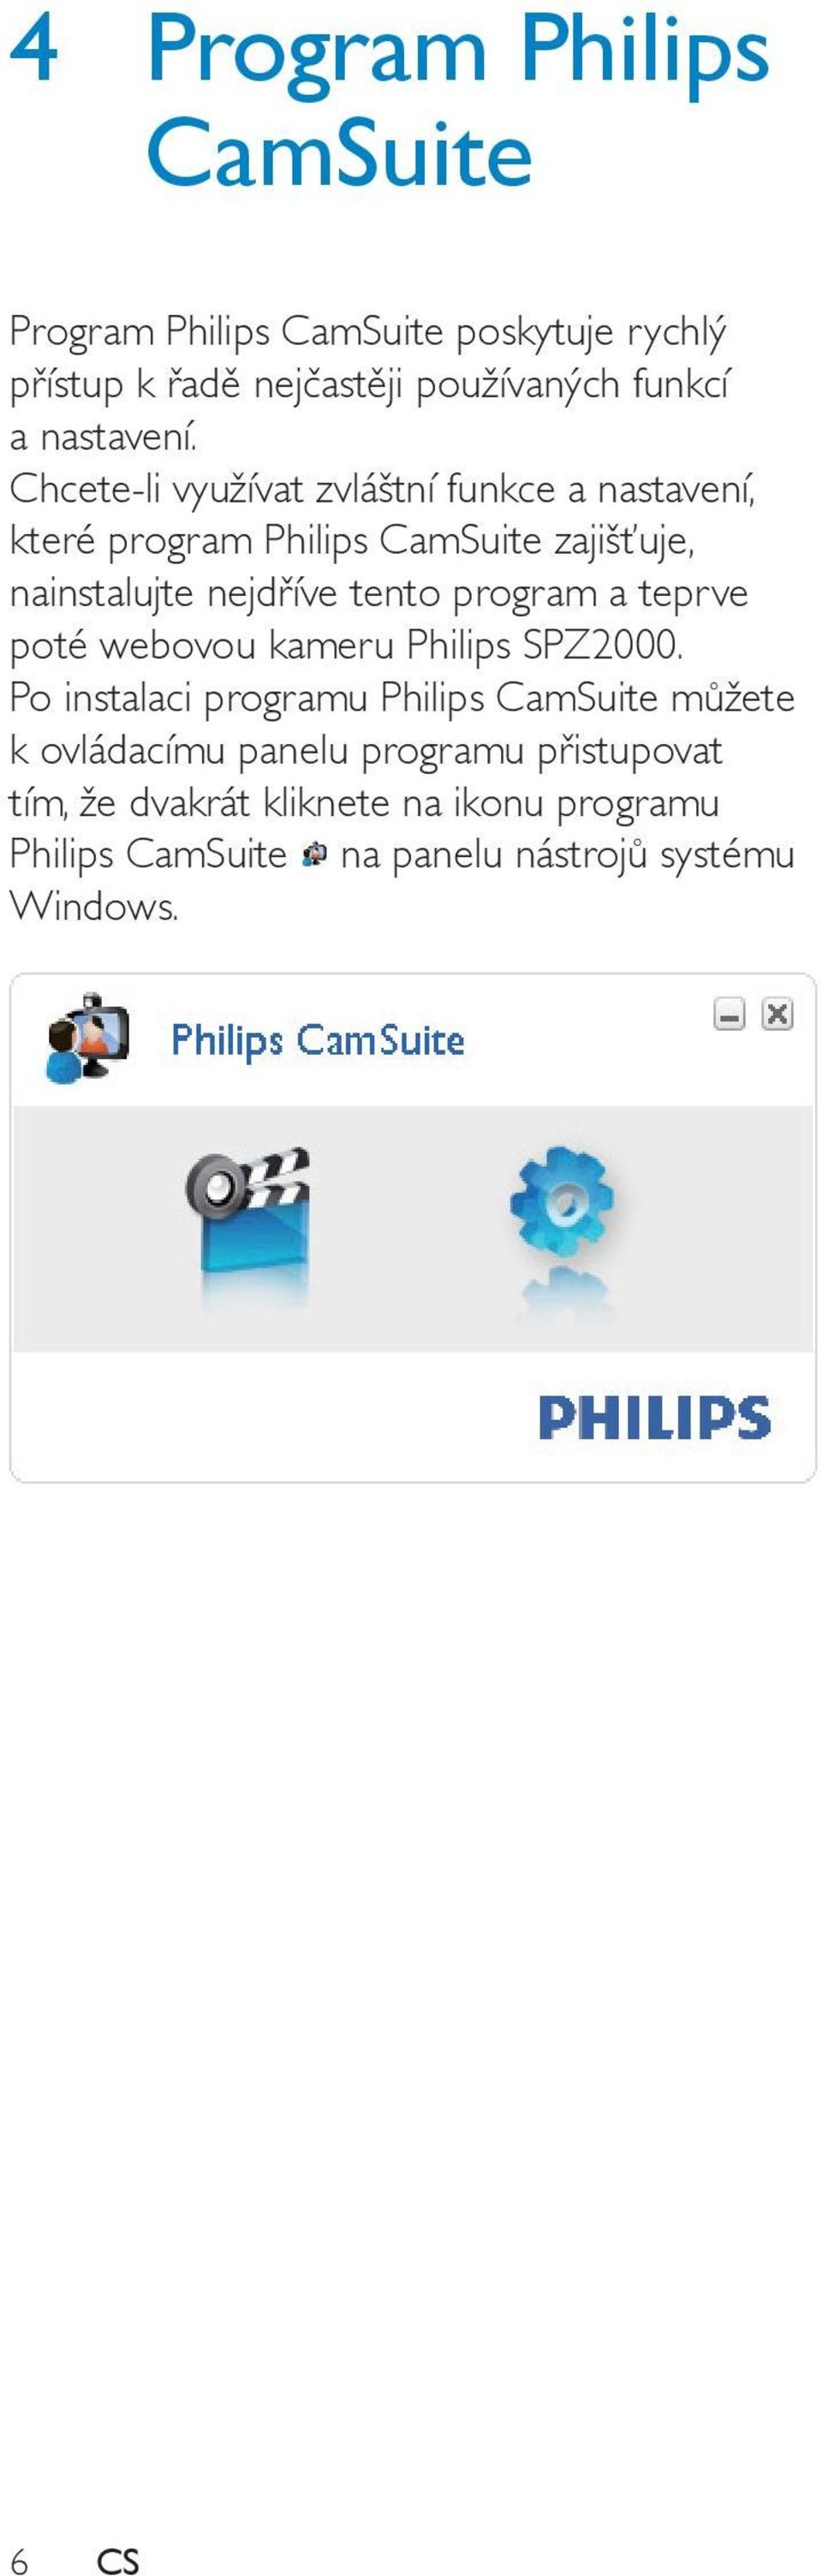 Chcete-li využívat zvláštní funkce a nastavení, které program Philips CamSuite zajišťuje, nainstalujte nejdříve tento